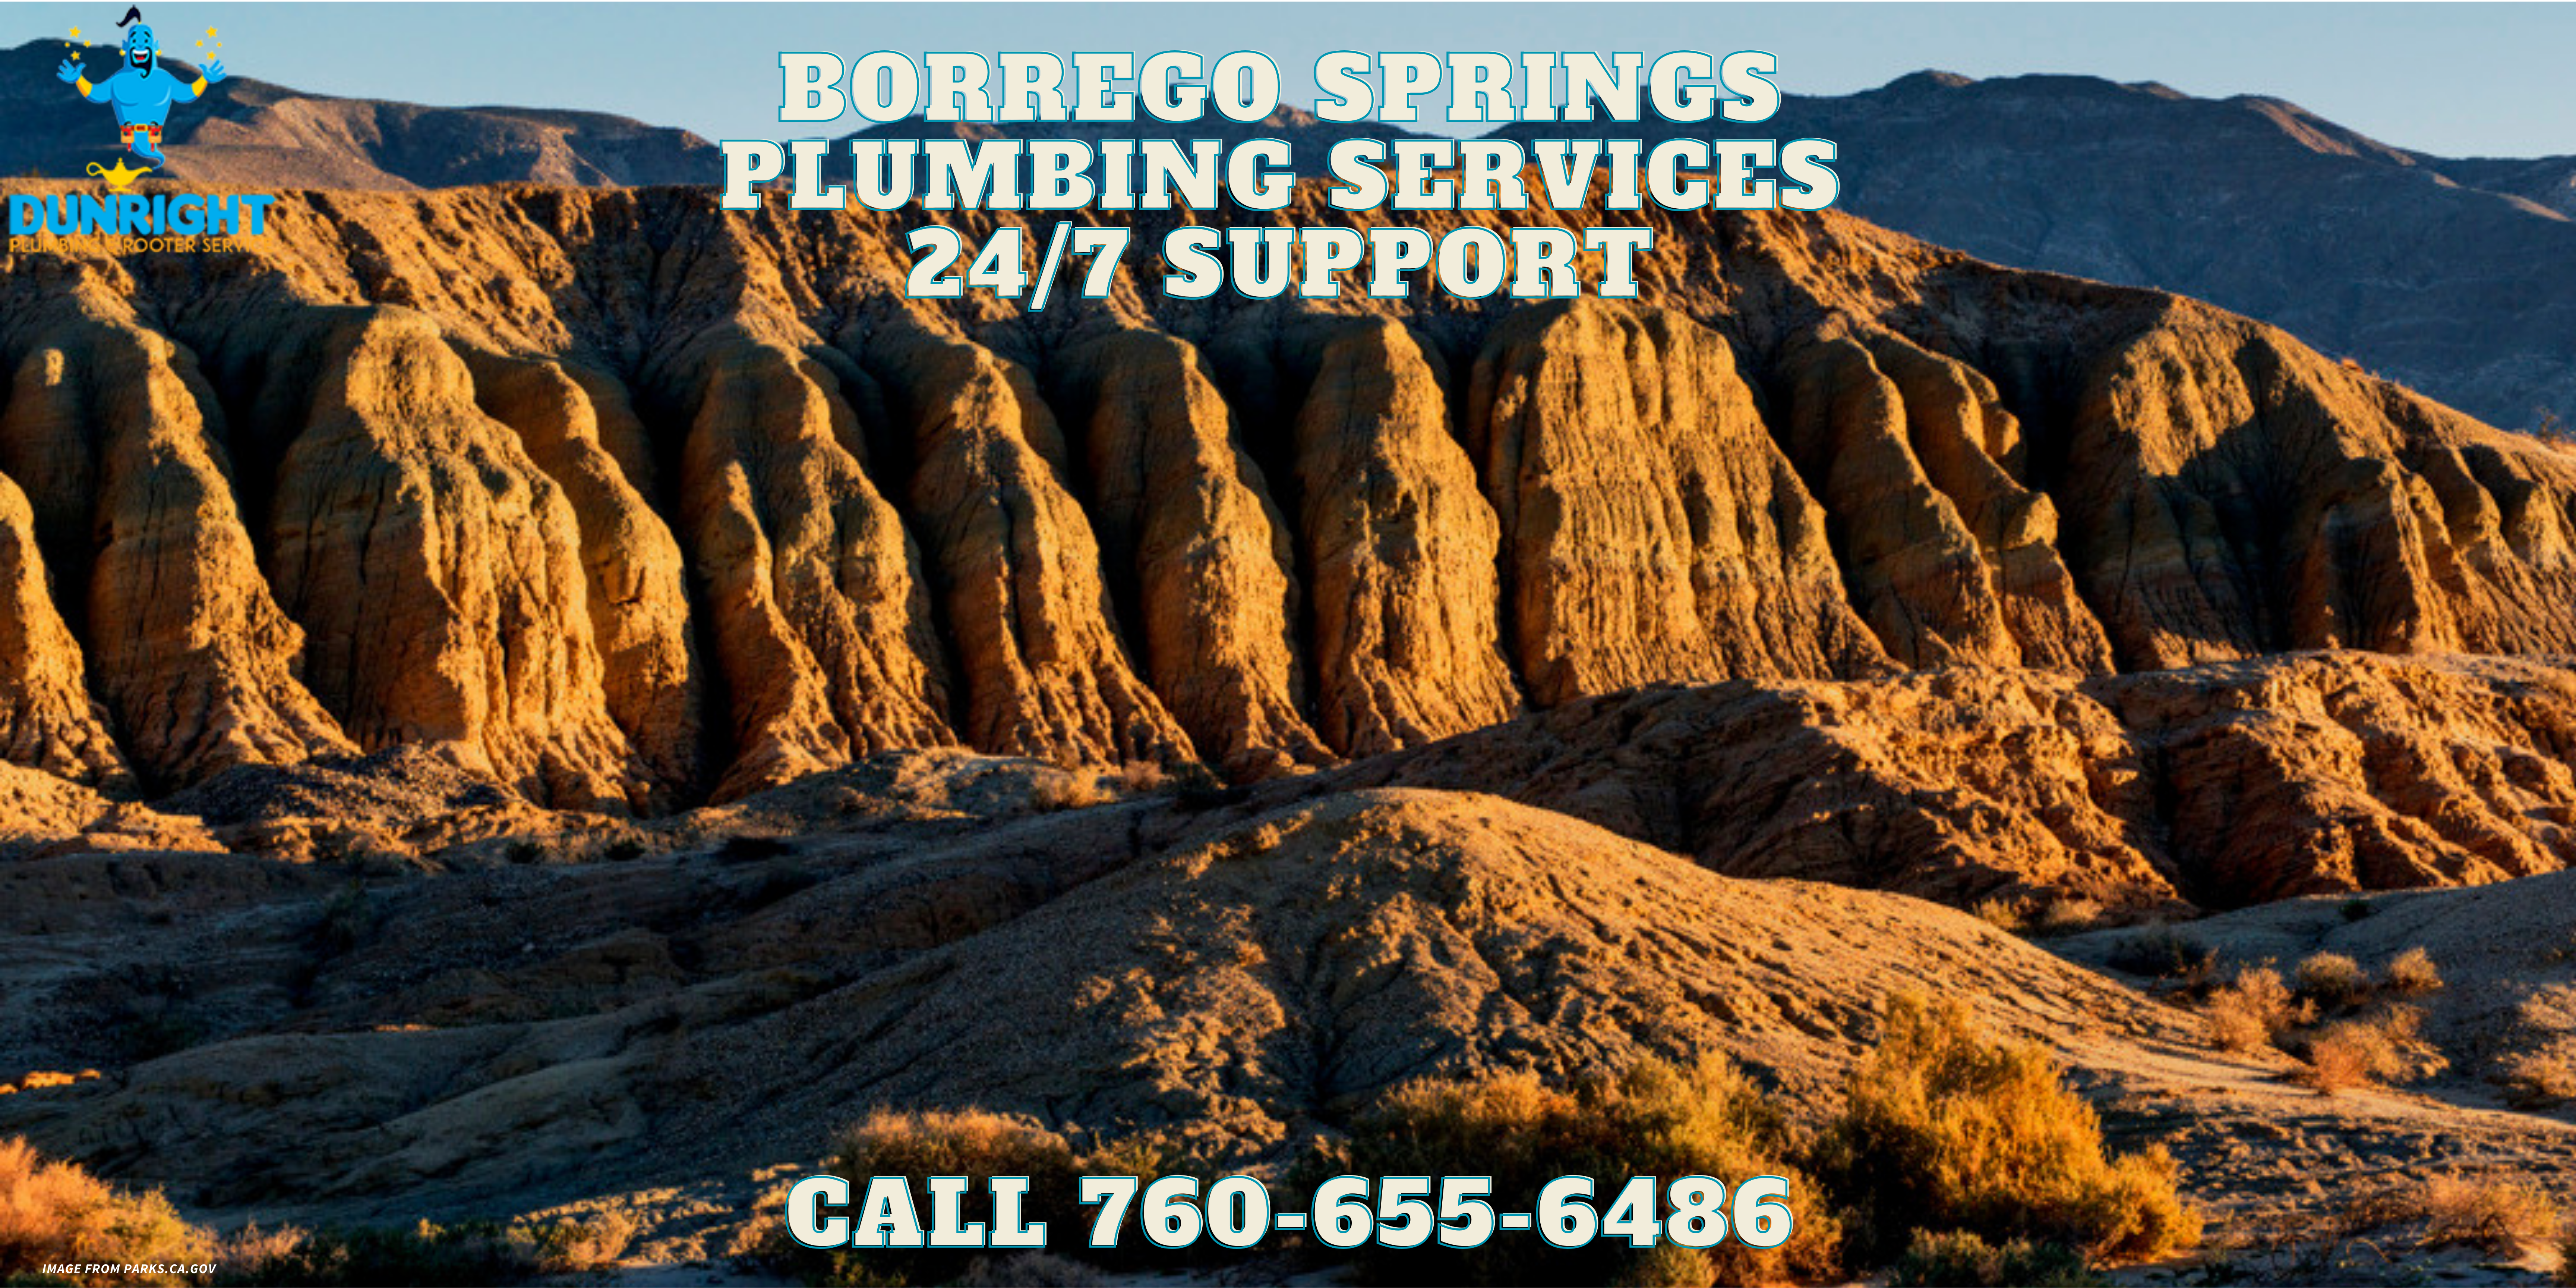 Borrego Springs Plumbing Services